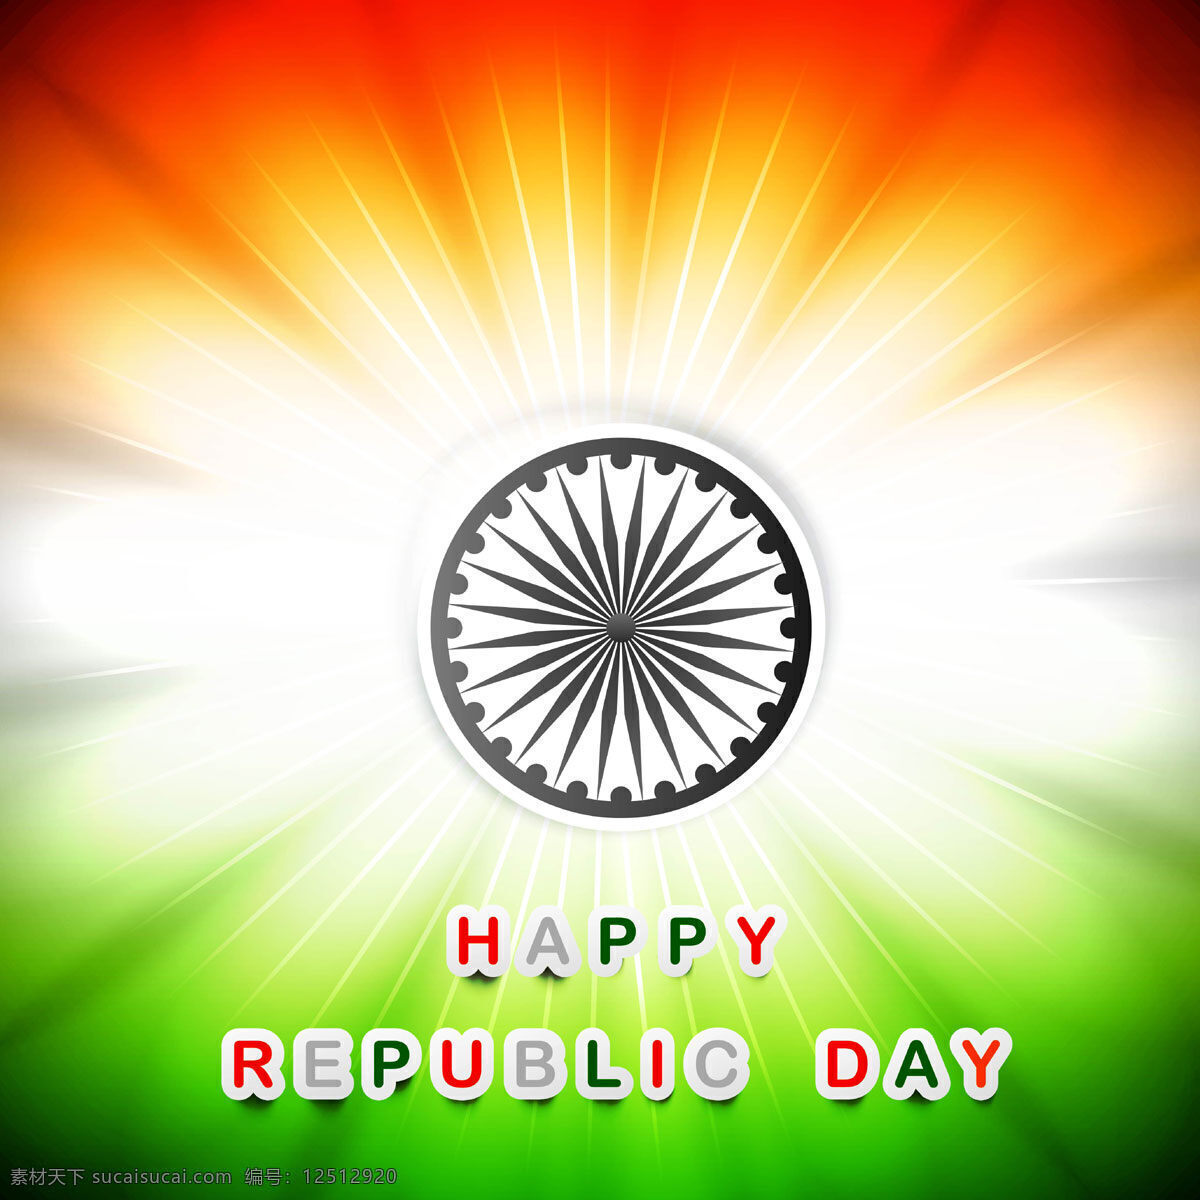 发光 印度 国旗 背景 抽象 节日 车轮 和平 印度国旗 独立日 国家 射线 自由 日 政府 爱国 一月 独立 白色